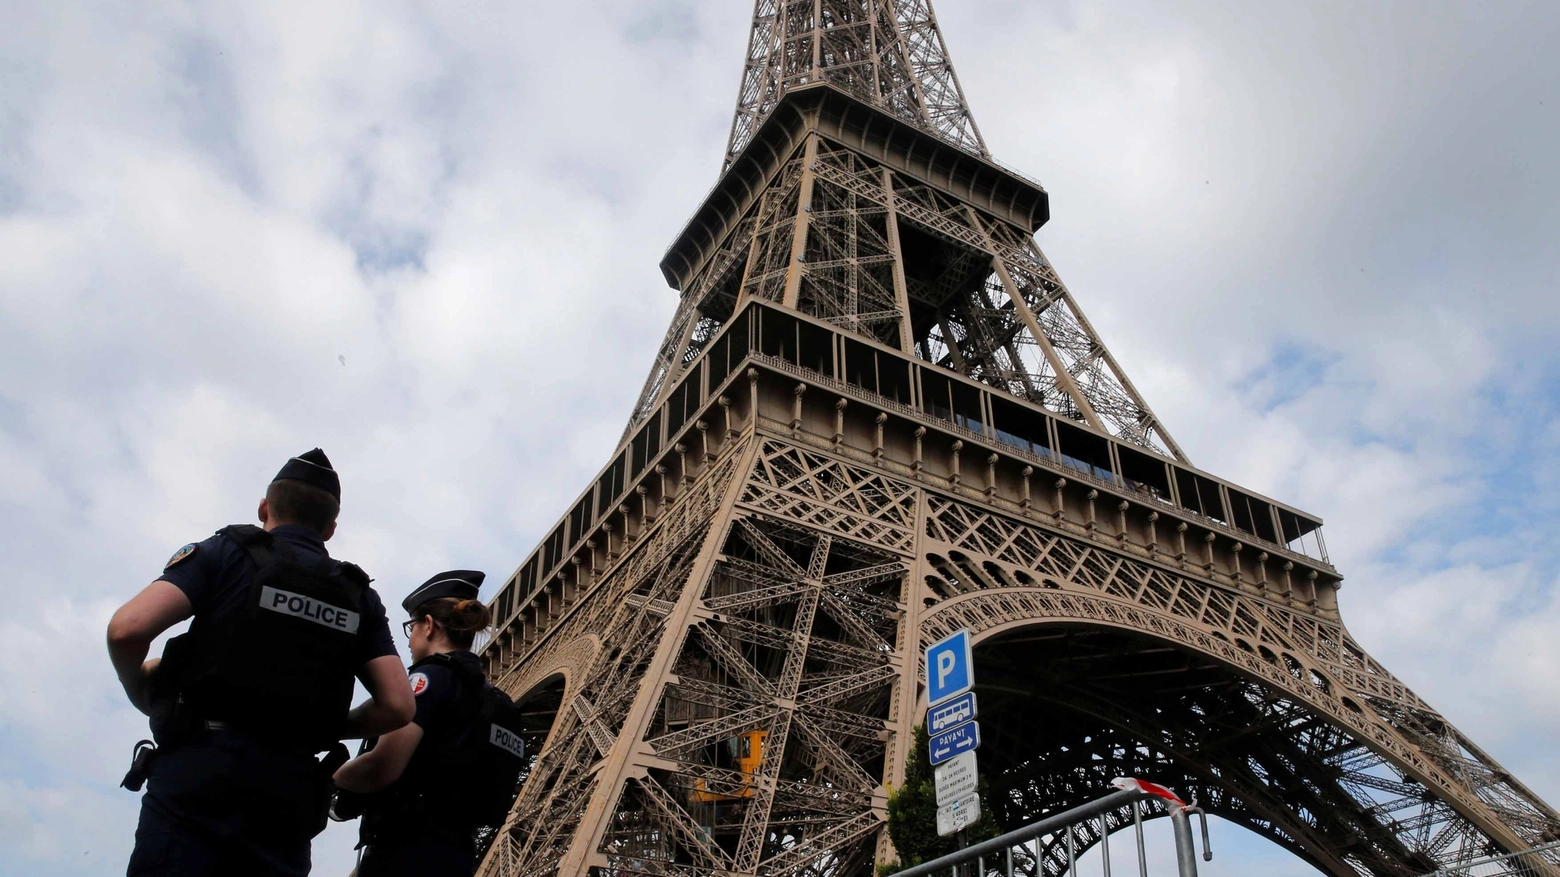 Parigi, una delle città europee già colpite dal terrorismo (Lapresse)